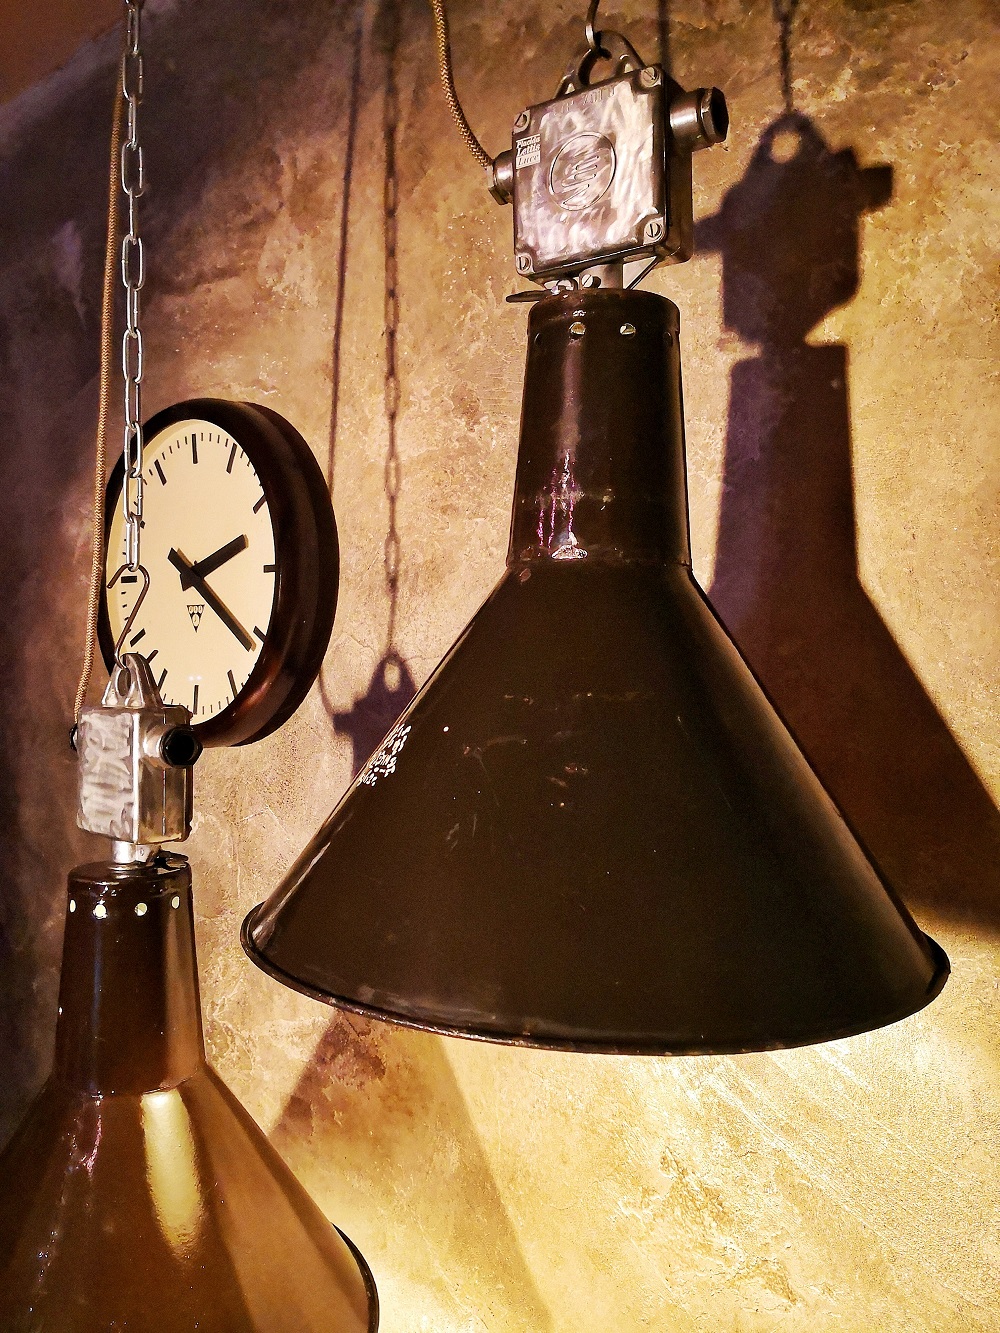 Lampada industriale prodotta negli anni '60 in repubblica ceca da Elektrosvit.